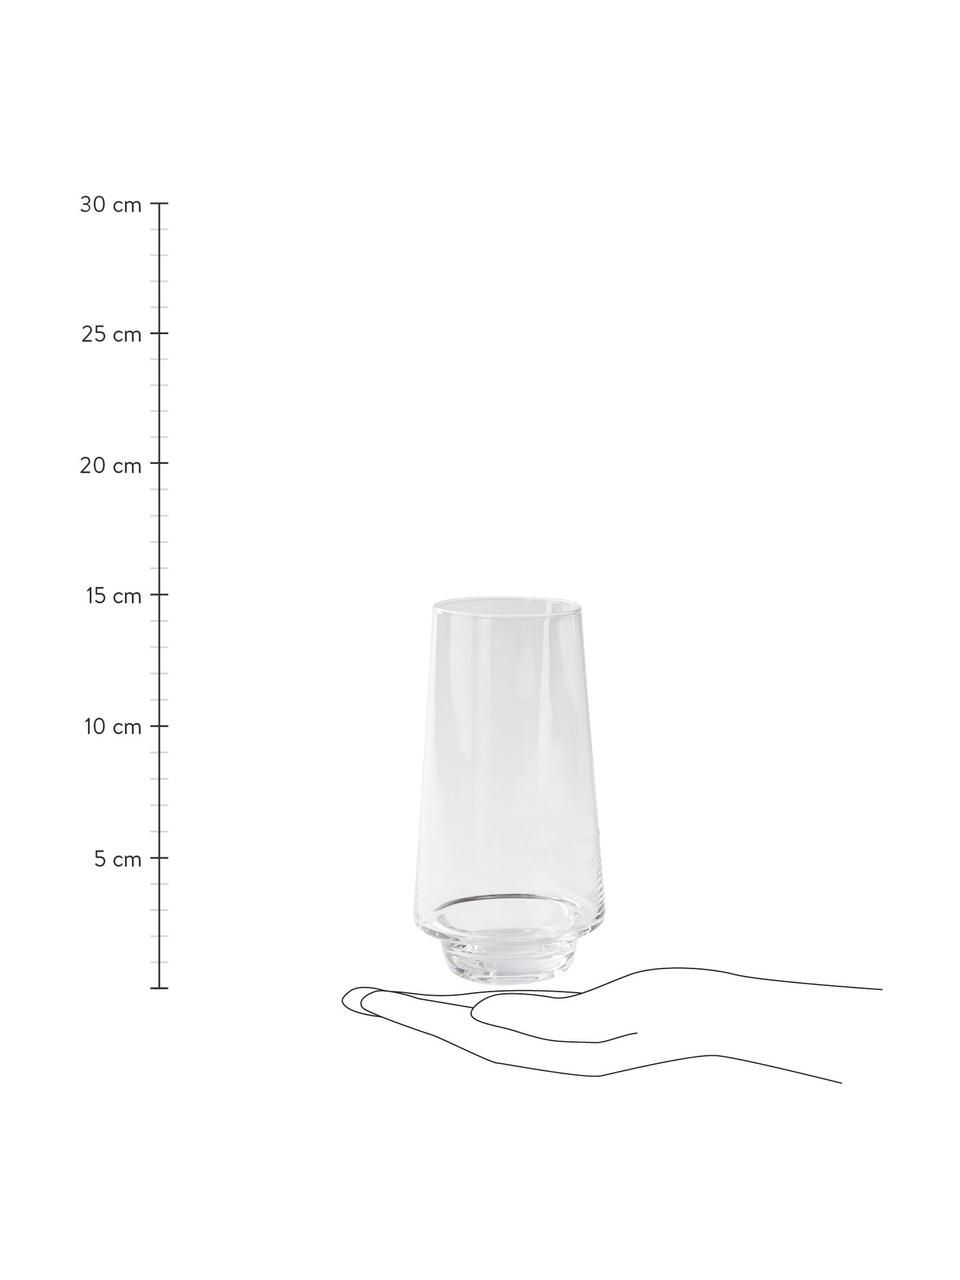 Bicchiere acqua trasparente Kai 4 pz, Vetro, Trasparente, Ø 6 x Alt. 15 cm, 450 ml